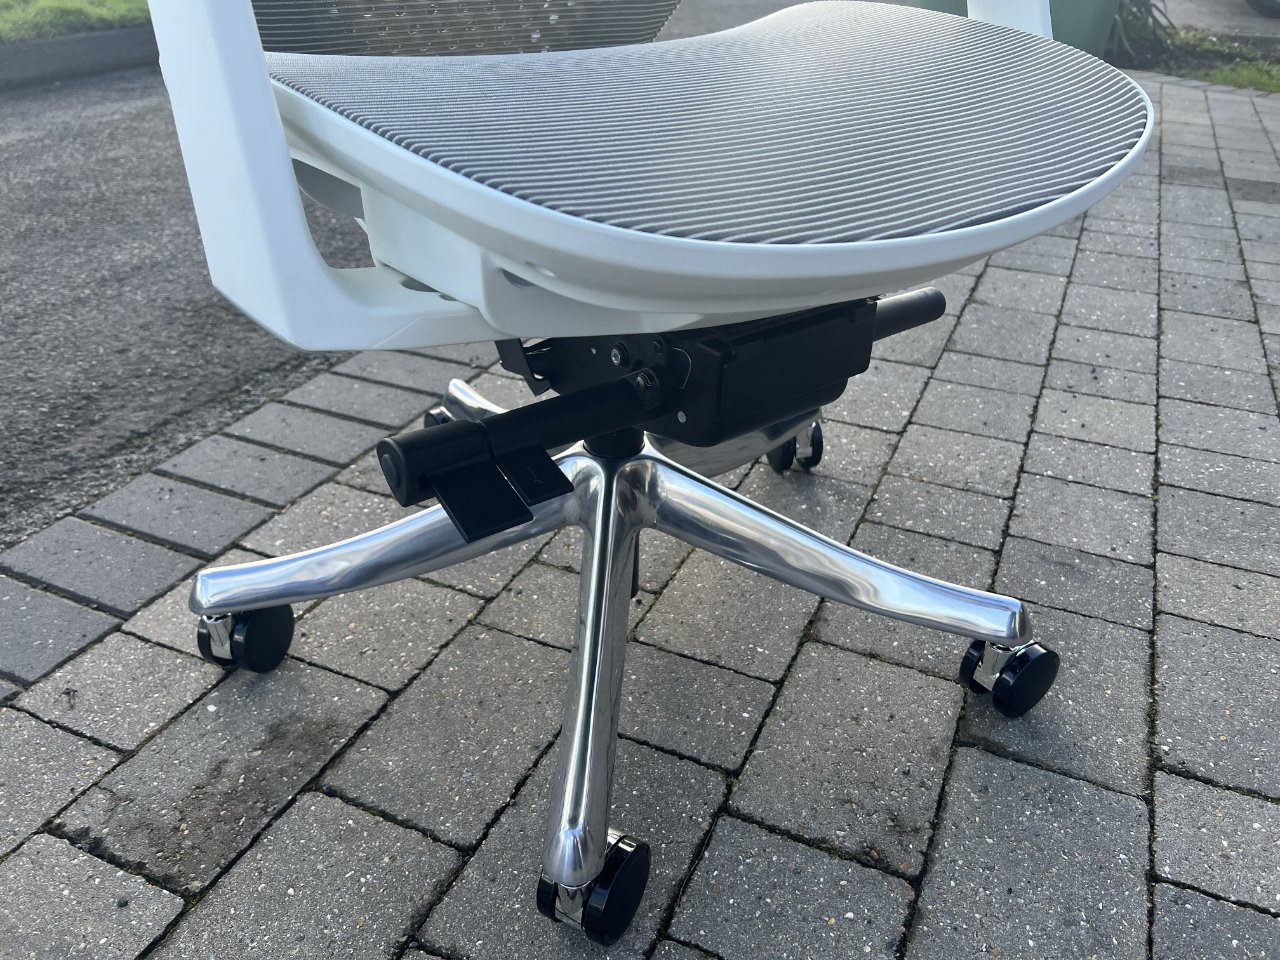 Пластиковая верхняя часть делает кресло легким для перемещения, а металлическое основание придает ему вес и поддержку.